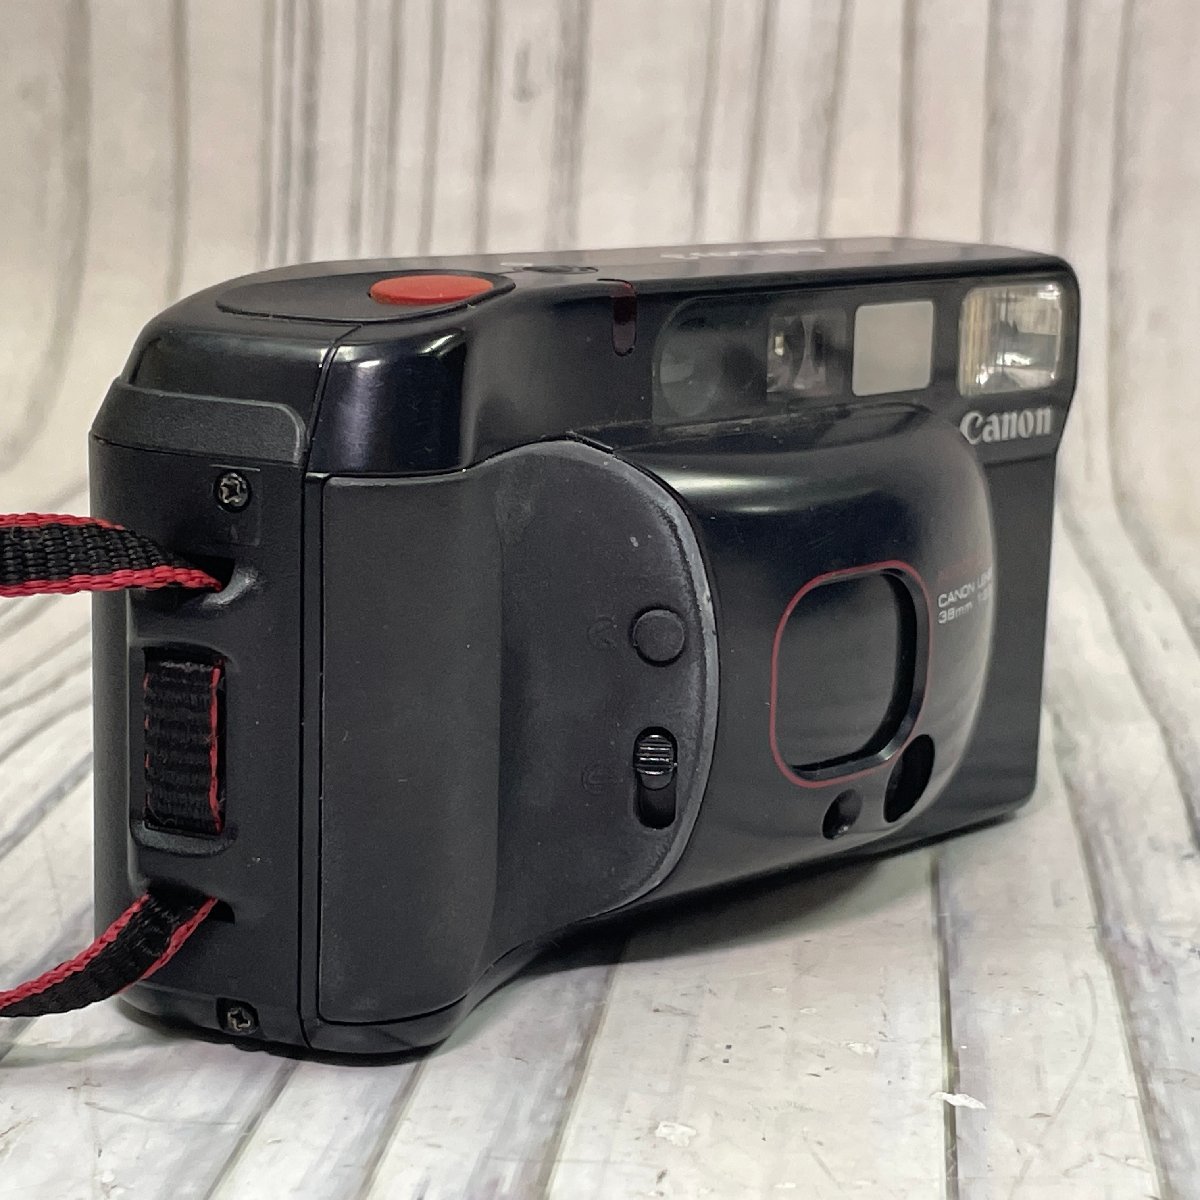 m002 F1(60) 3 CANON Canon Autoboy 3 LENS 38mm F2.8 compact film camera Junk present condition 